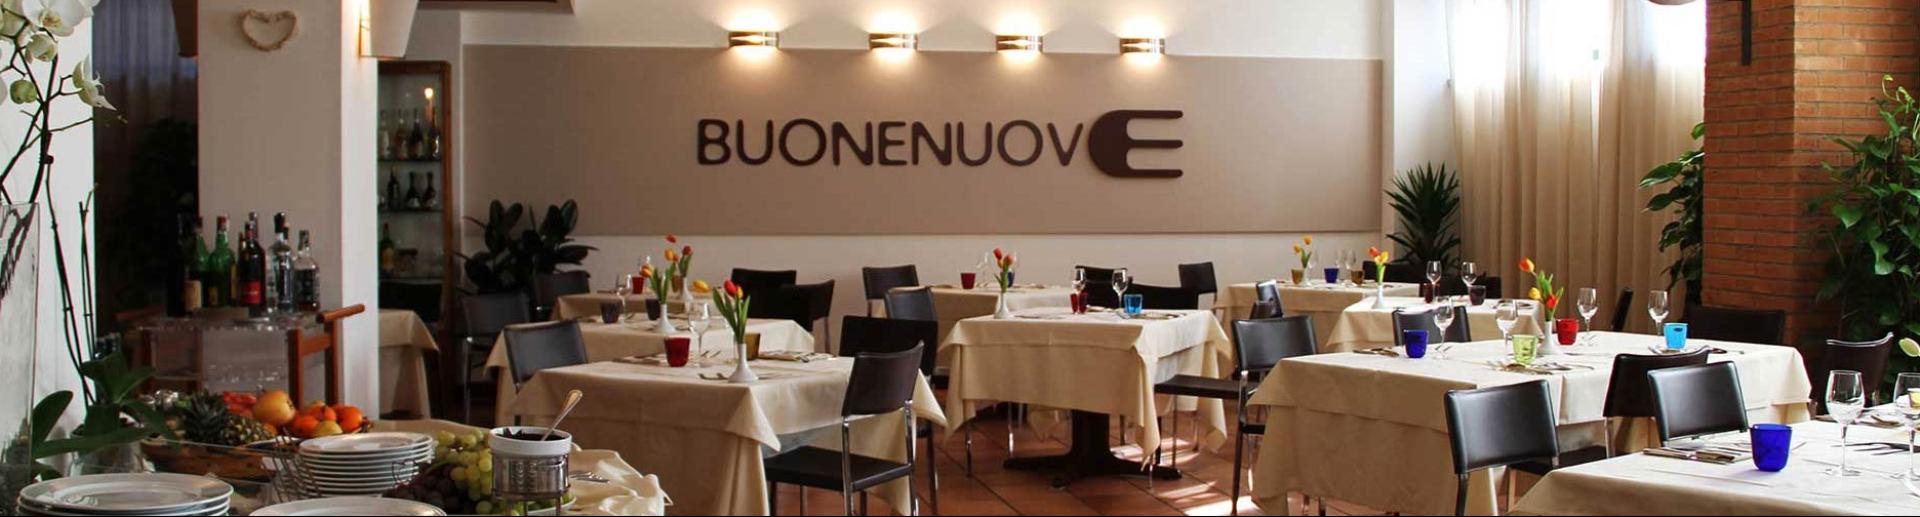 chocohotel en restaurant-buonenuove-perugia 012